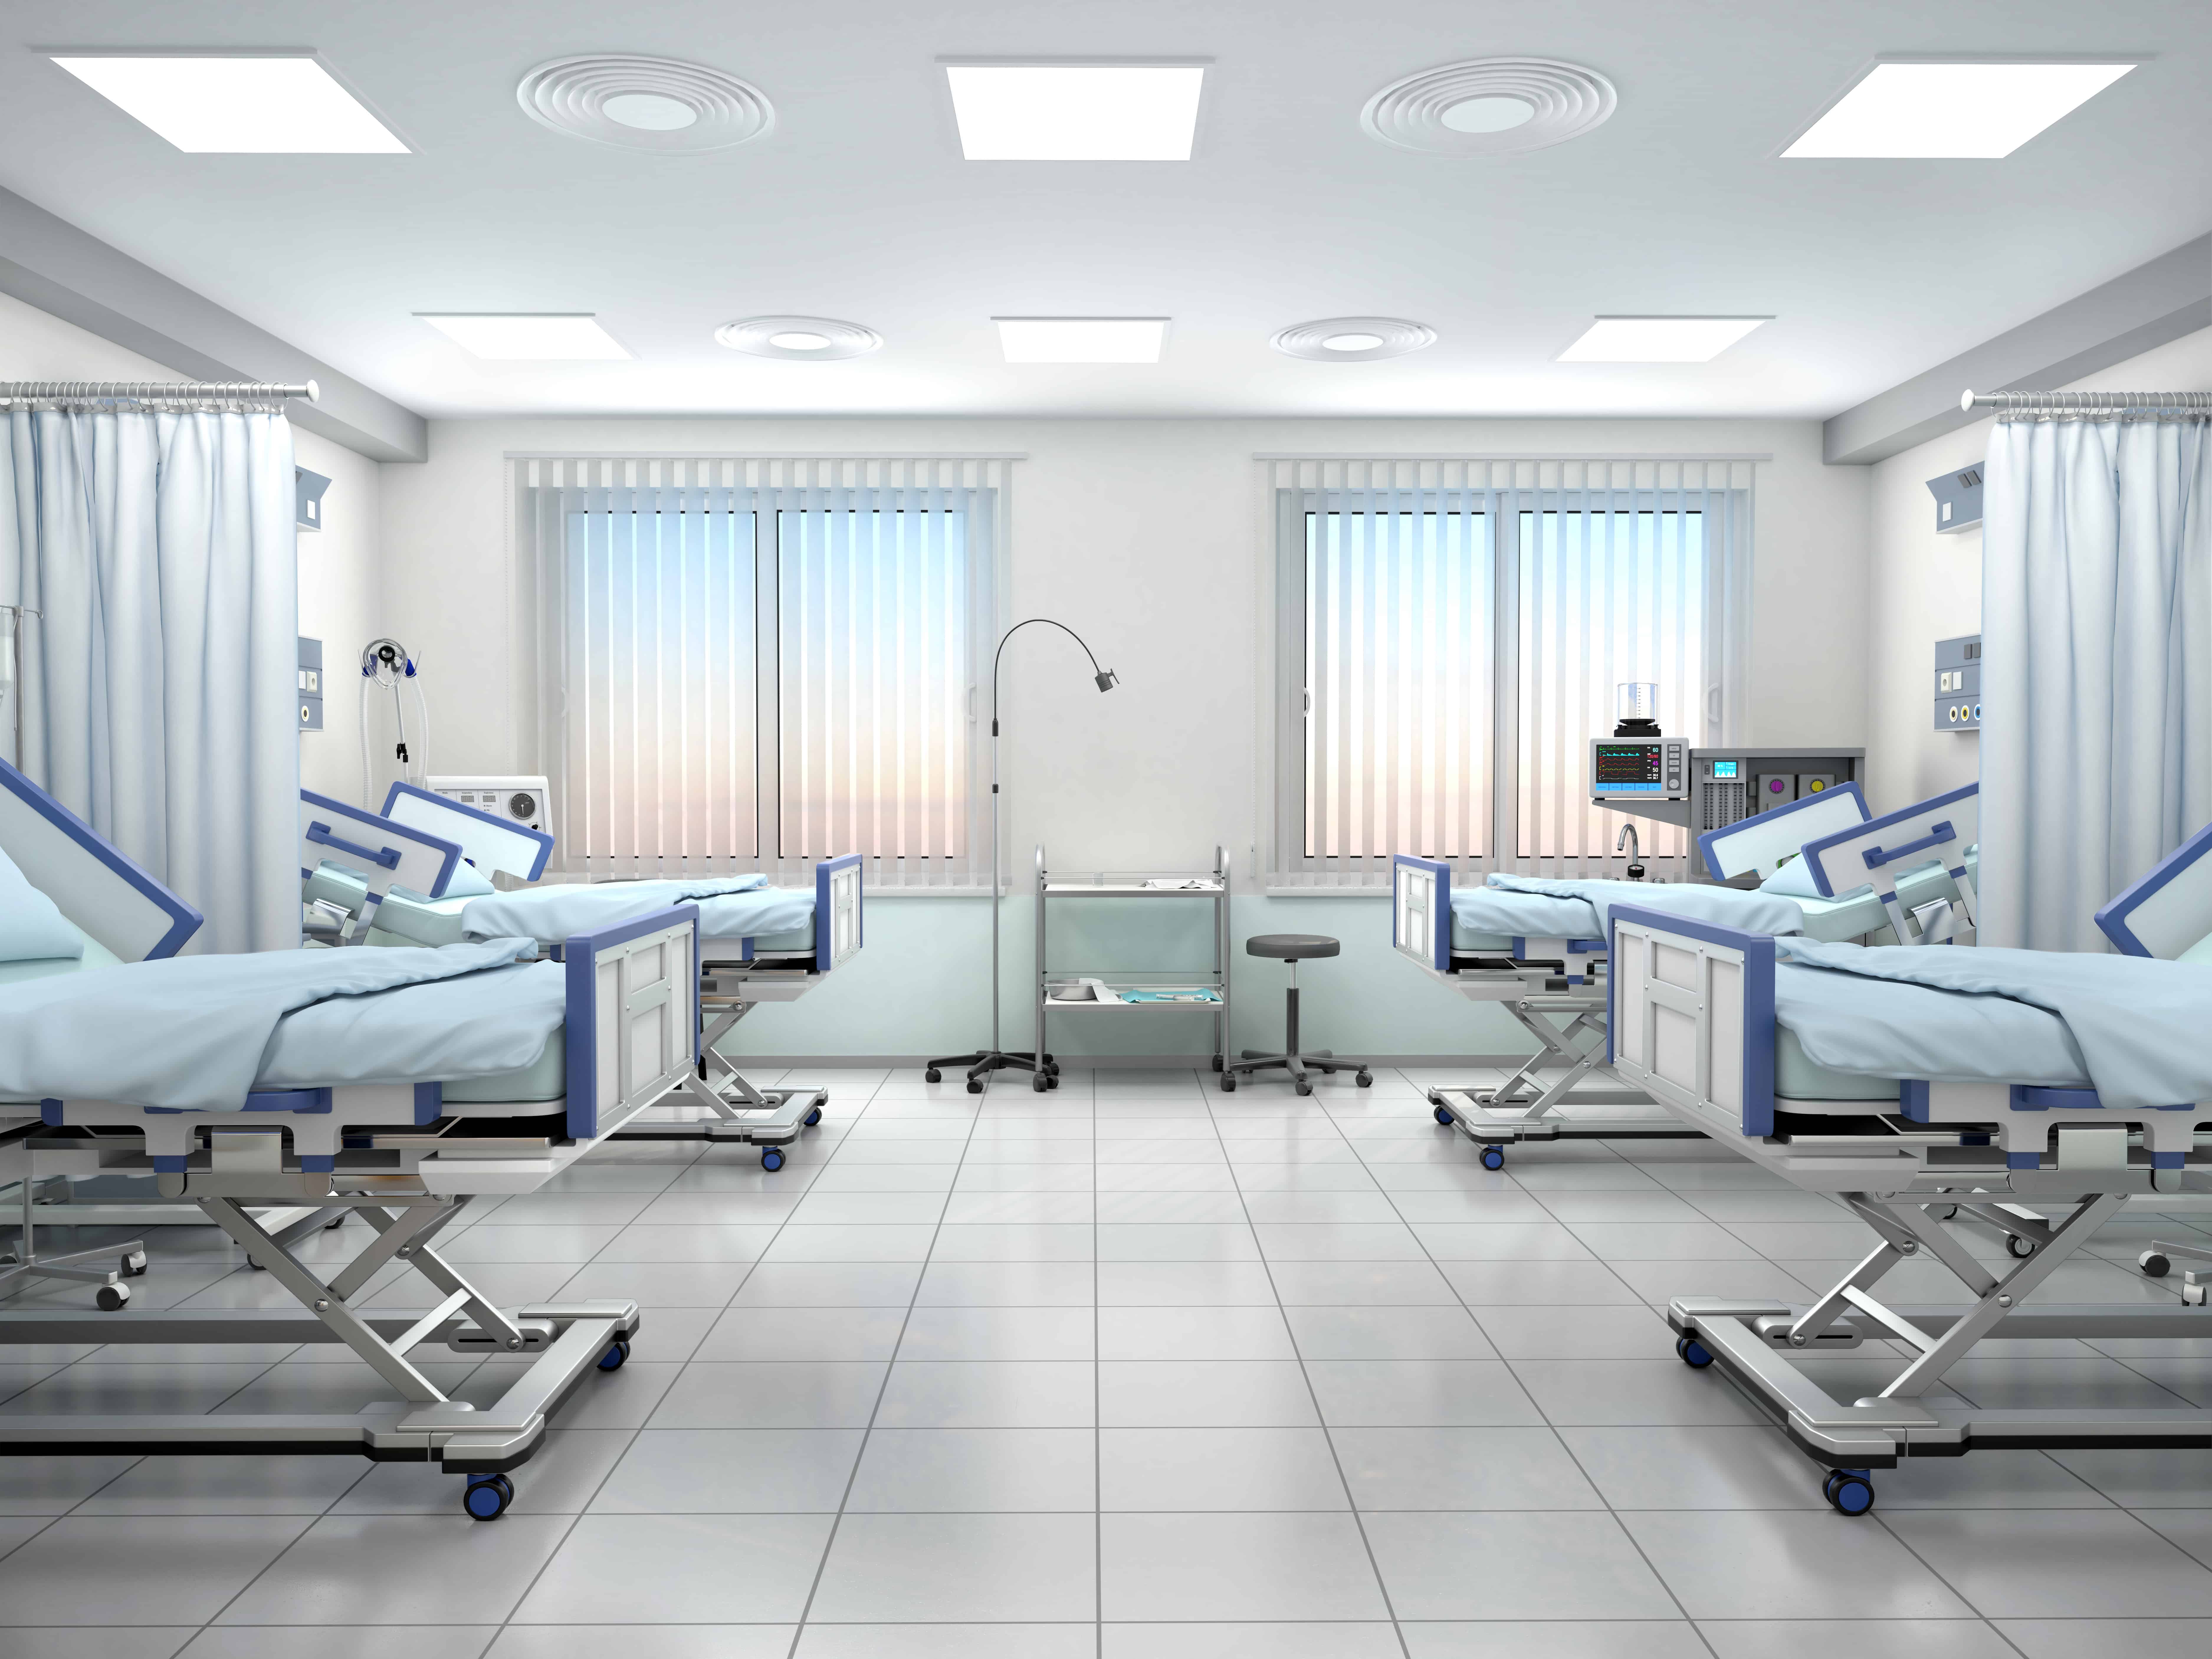 Больничная комната 3 кроватями